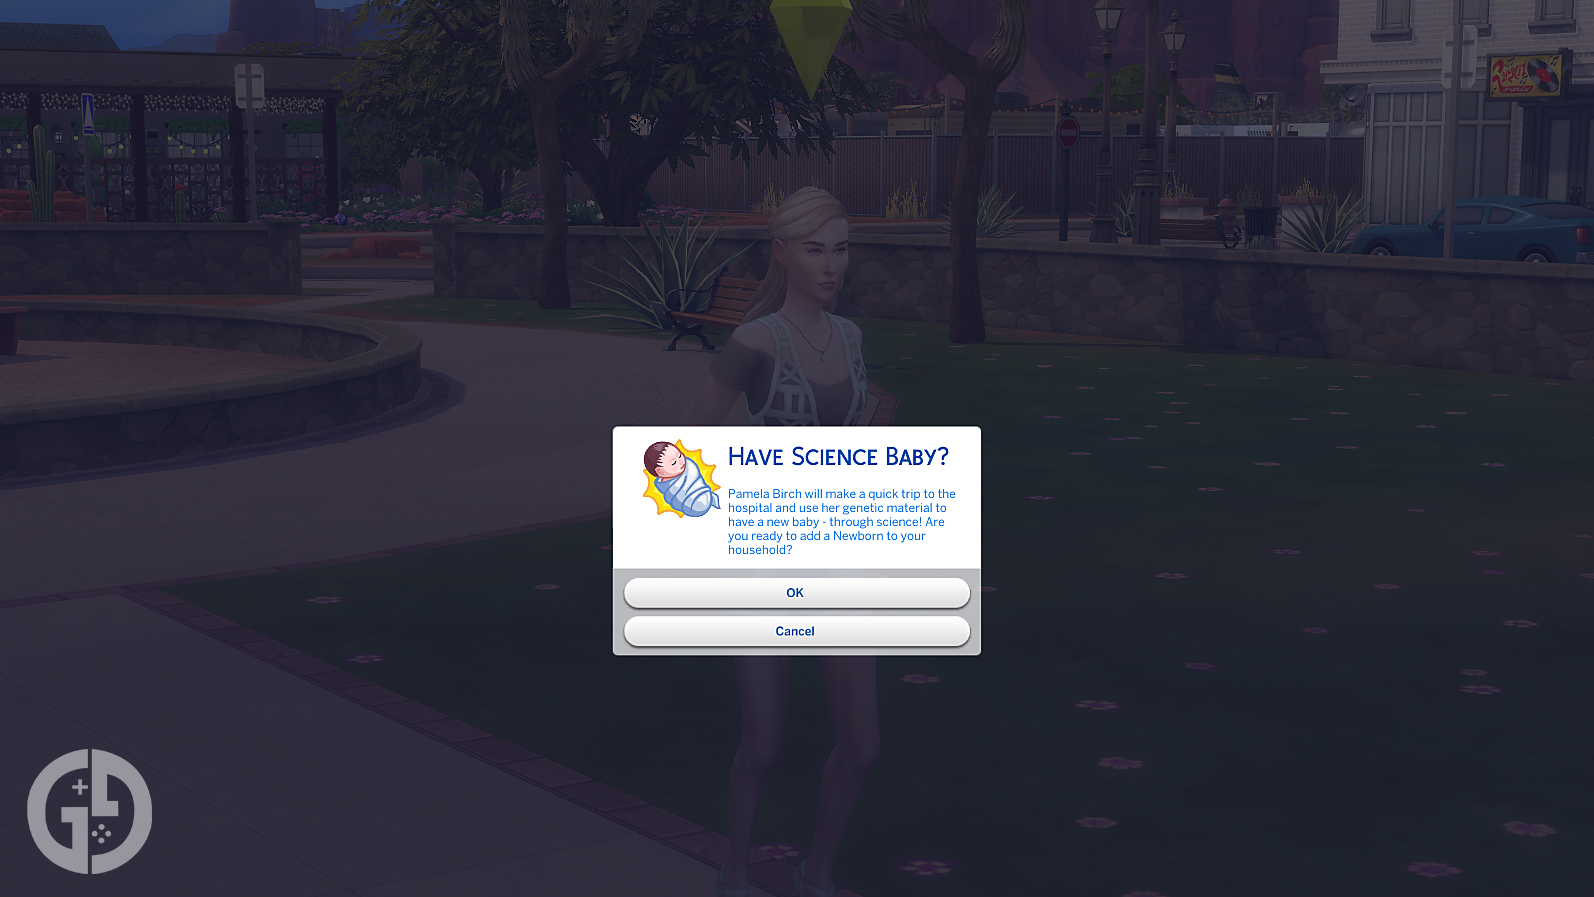 Читы для беременных в The Sims 4: как вызвать роды, родить близнецов и многое другое